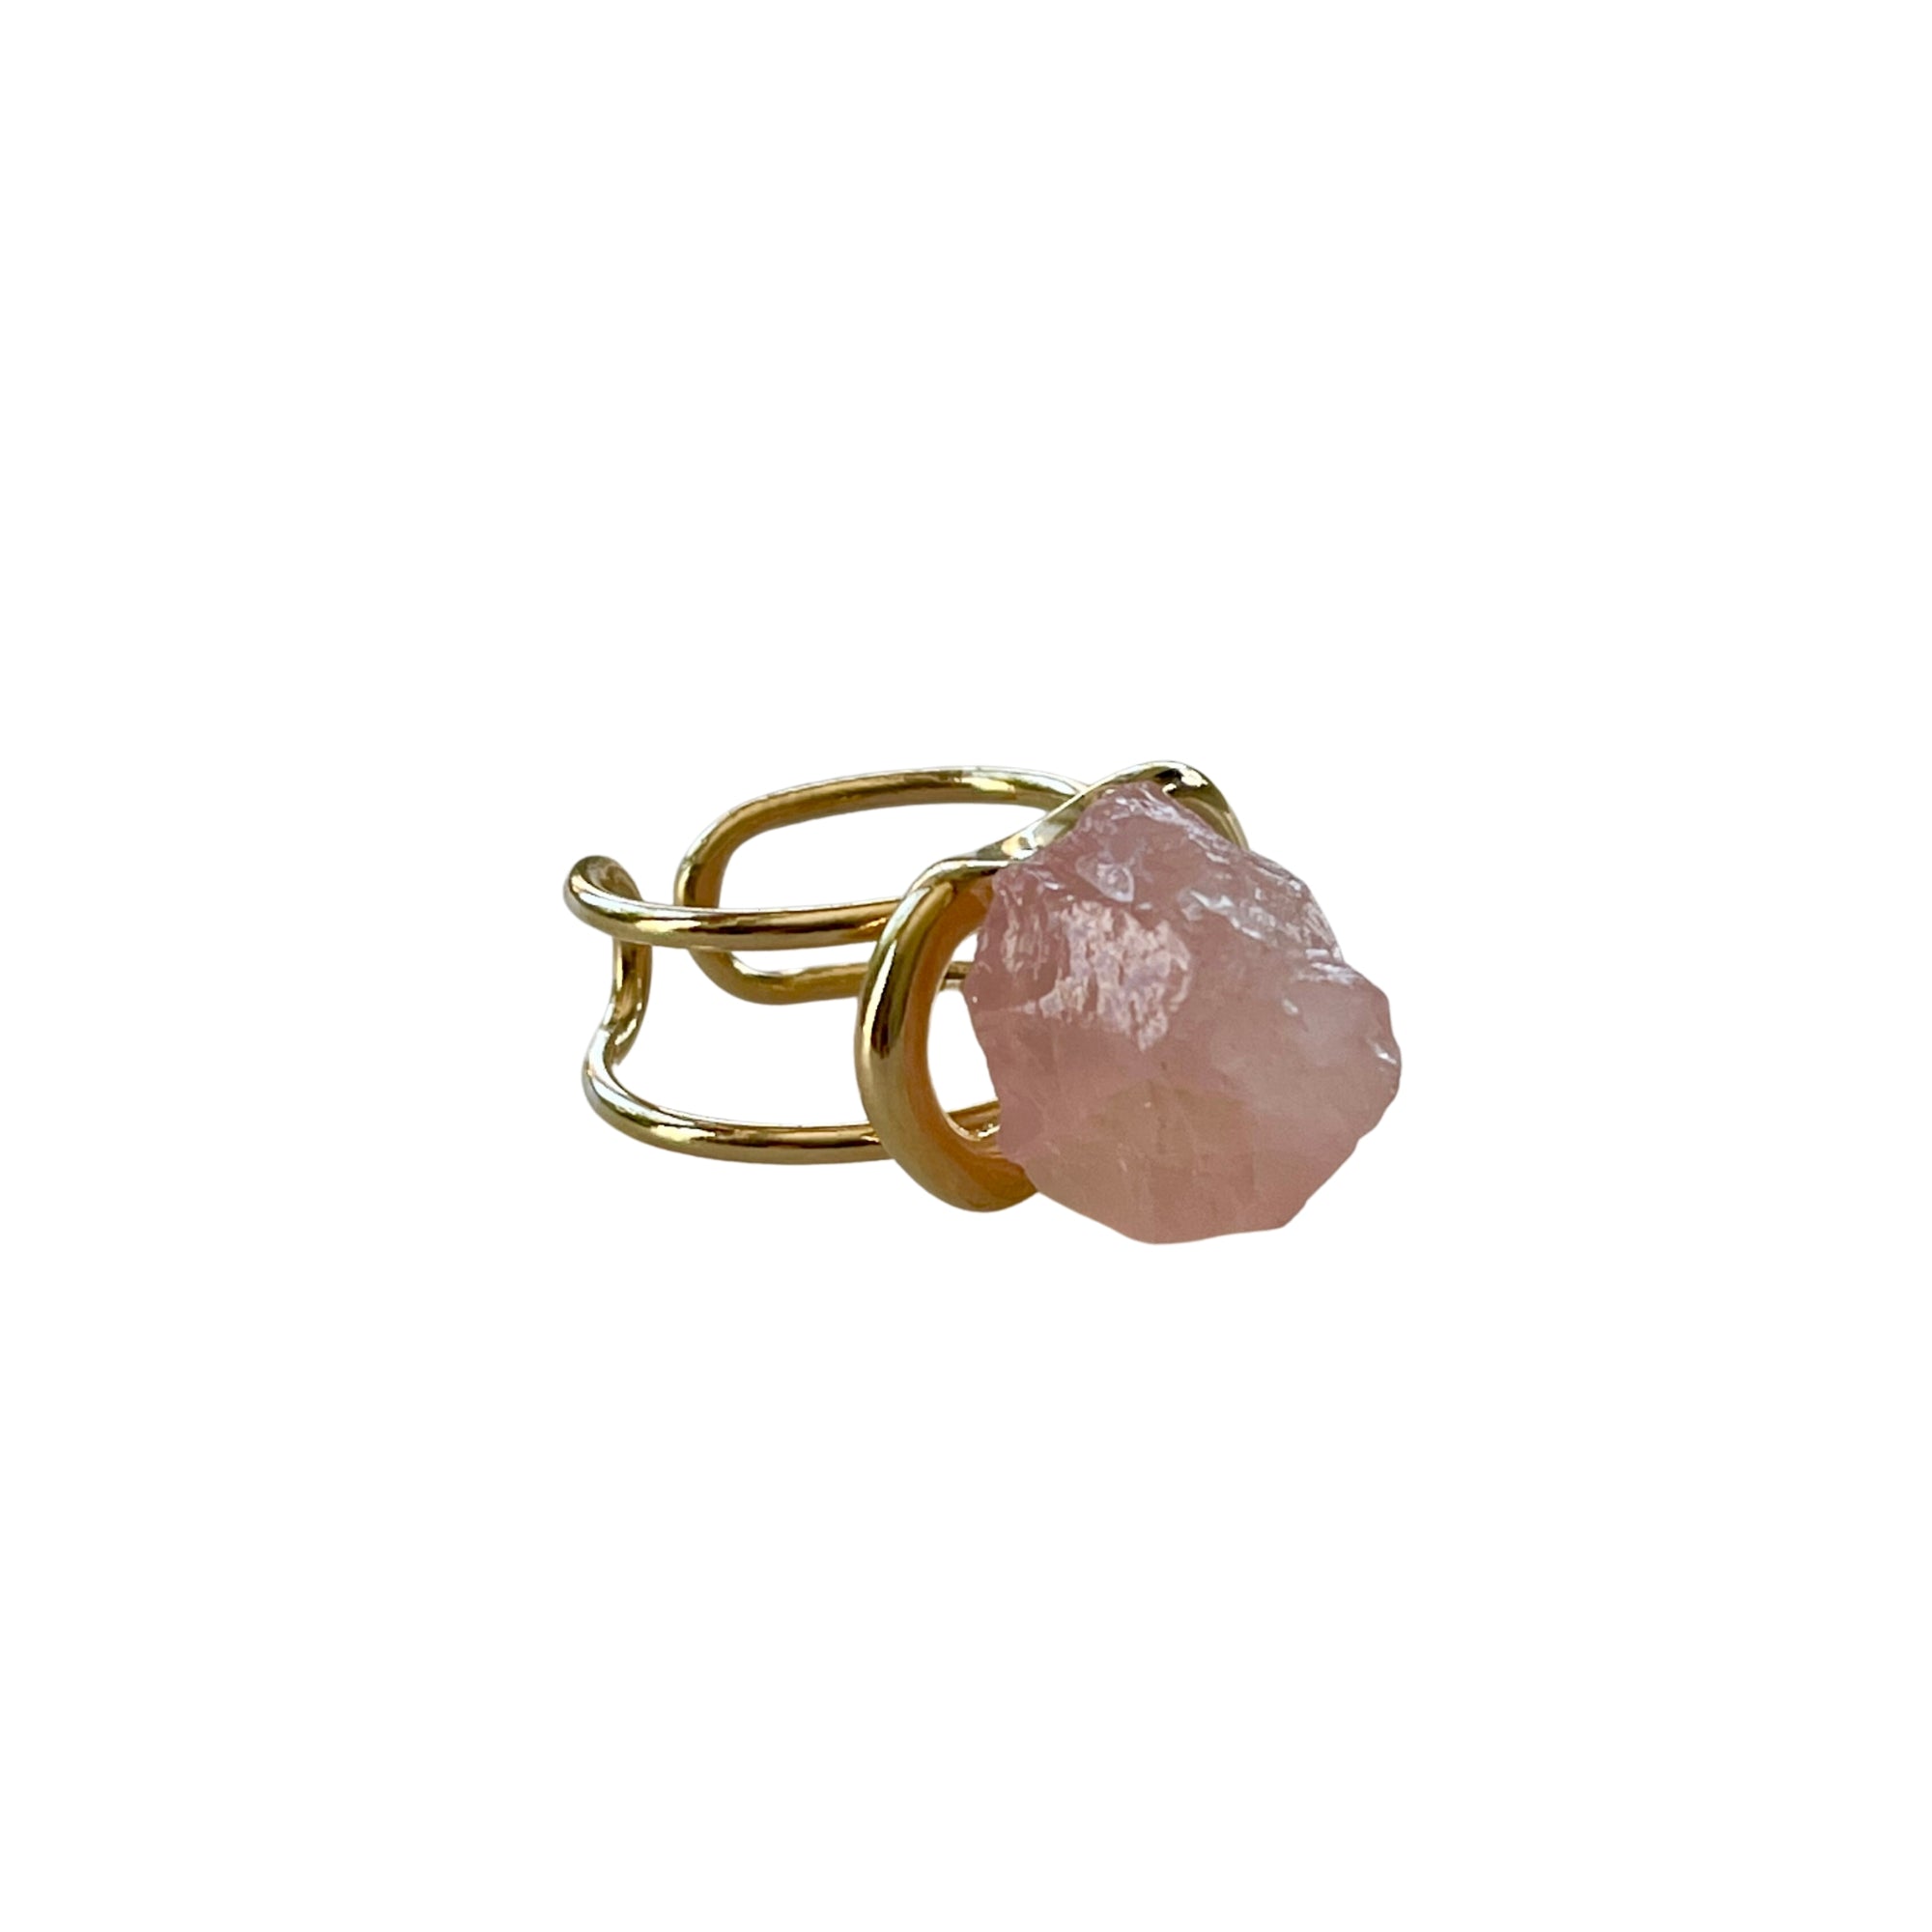 Der Ring "ÉRIKA", vergoldet mit 18 K Rosenquarz, ist ein unverwechselbares Stück.  Ein offener Cocktailring in transparentem Design. Verstellbar.  Hergestellt aus hochwertigem 18 K vergoldetem Messing mit Quarz. Perfekt für Frauen, die besondere und einzigartige Stücke zu schätzen wissen